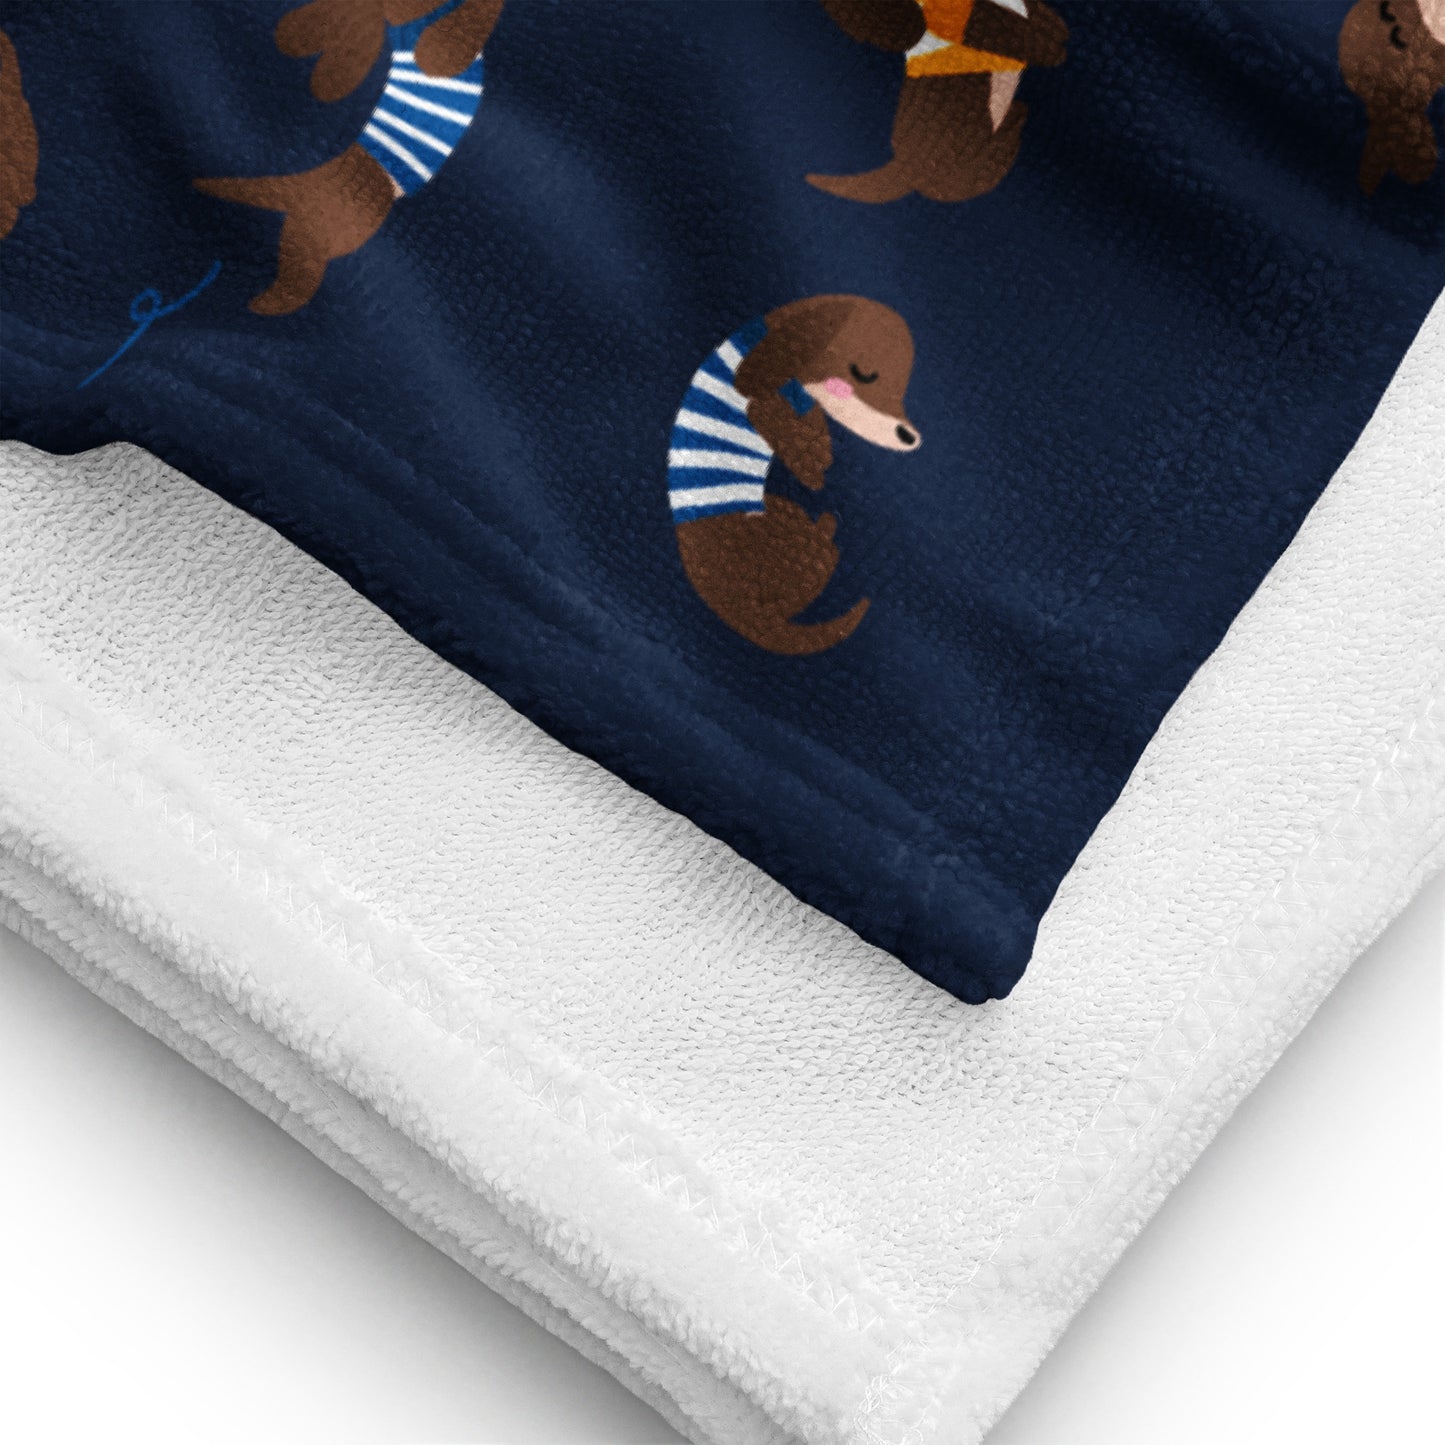 Dachshund in Stripes Towel